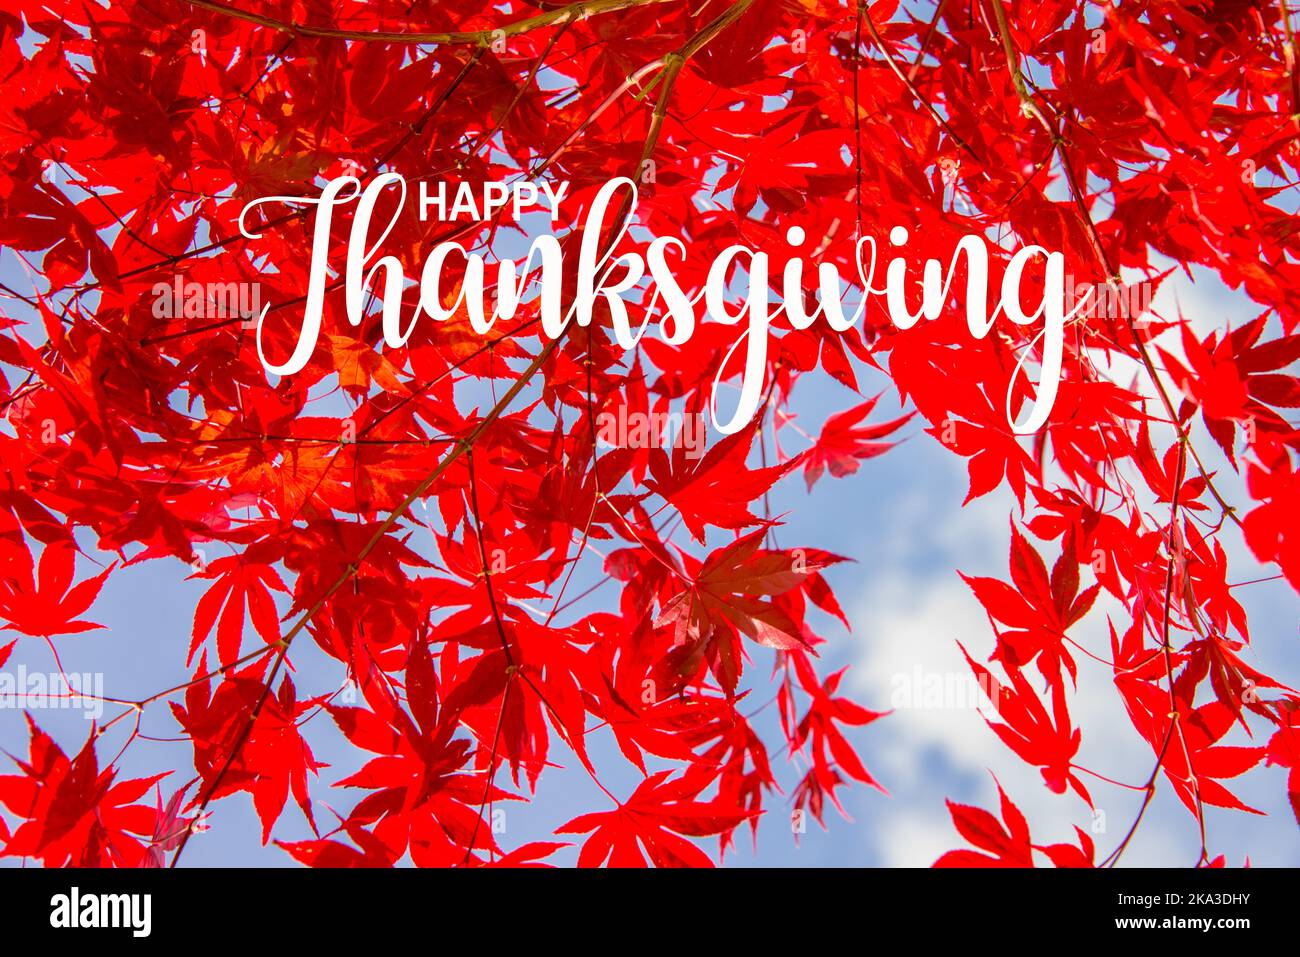 Rote bunte Ahornblätter im Herbst, blauer Himmel Hintergrund - Happy Thanksgiving Karte Stockfoto